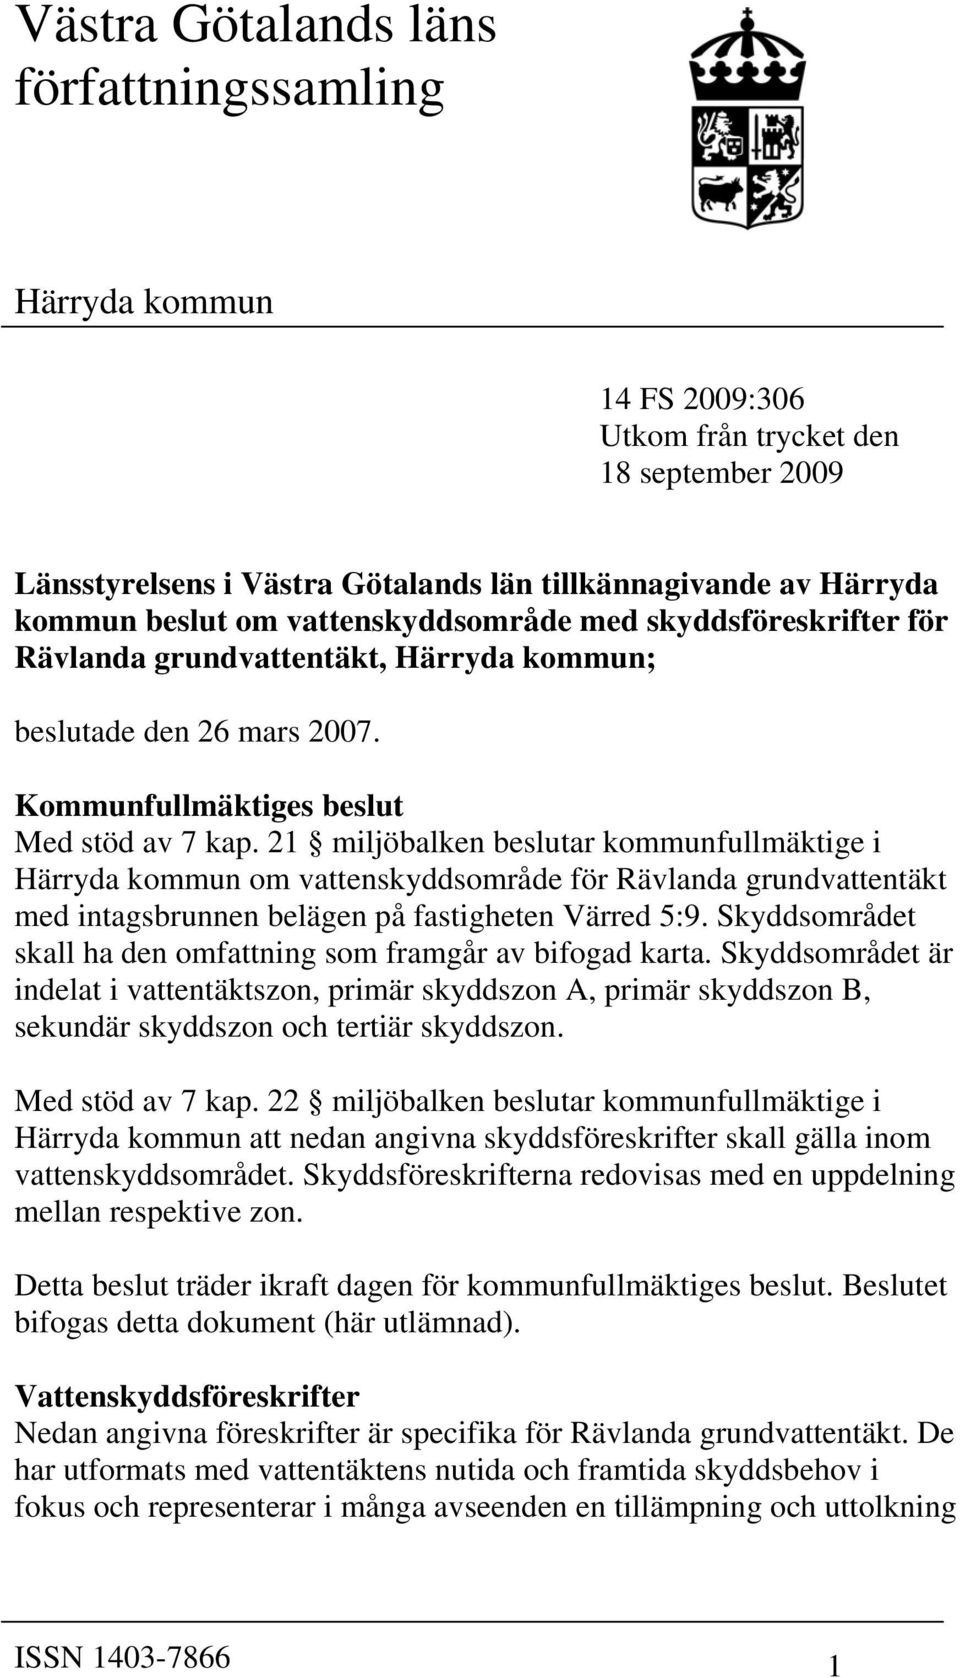 21 miljöbalken beslutar kommunfullmäktige i Härryda kommun om vattenskyddsområde för Rävlanda grundvattentäkt med intagsbrunnen belägen på fastigheten Värred 5:9.